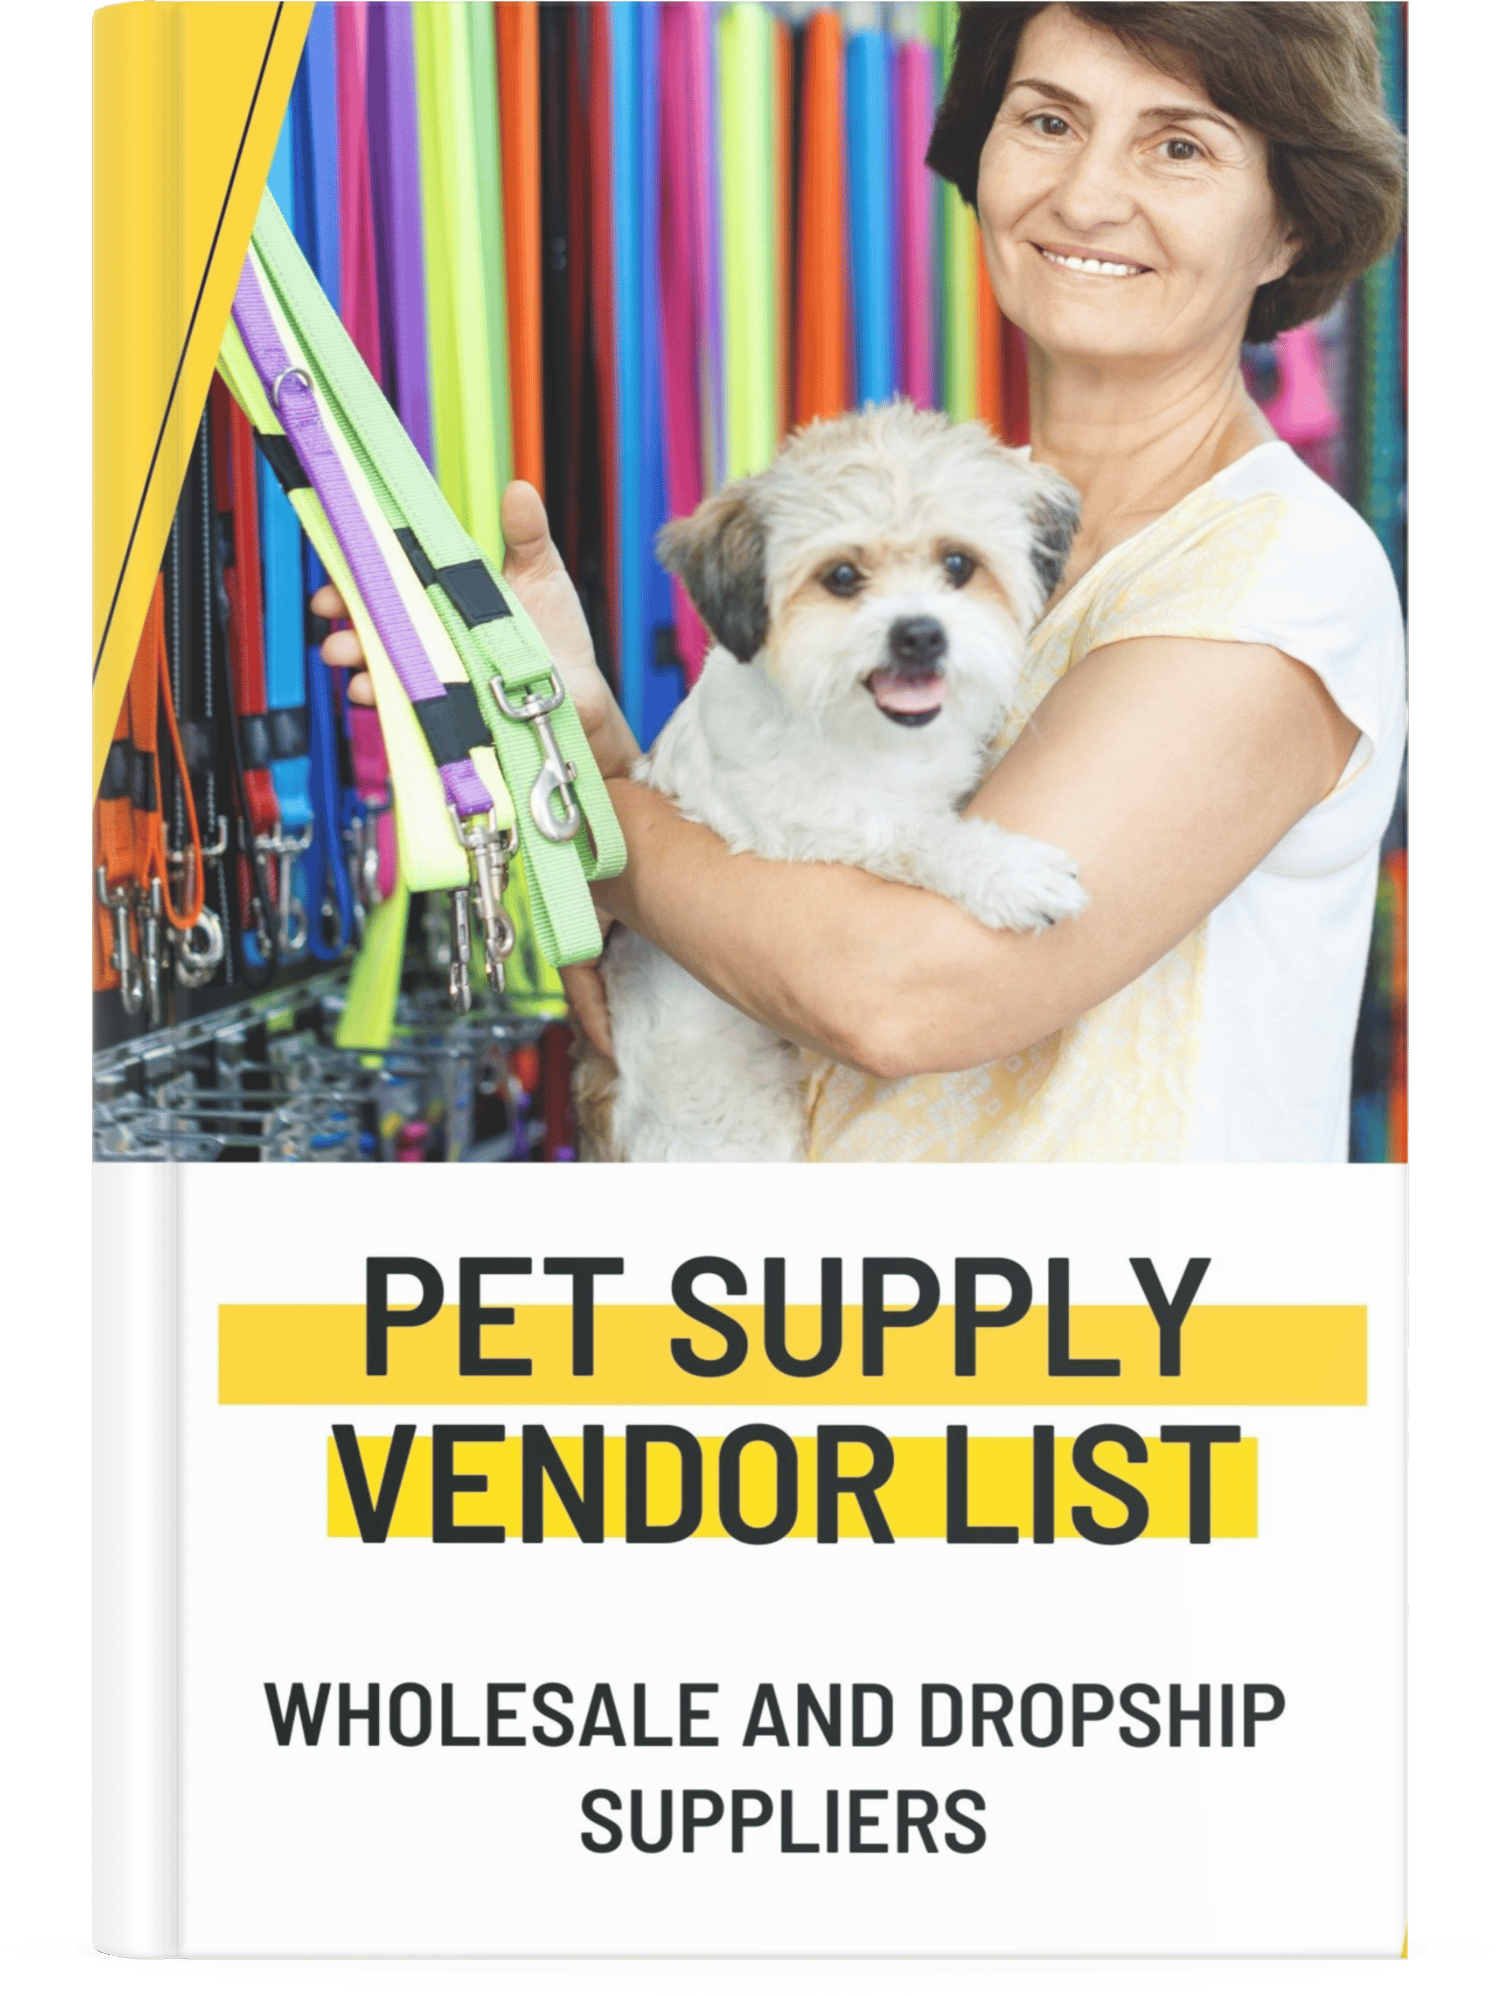 Quality Wholesale Pet Supplies